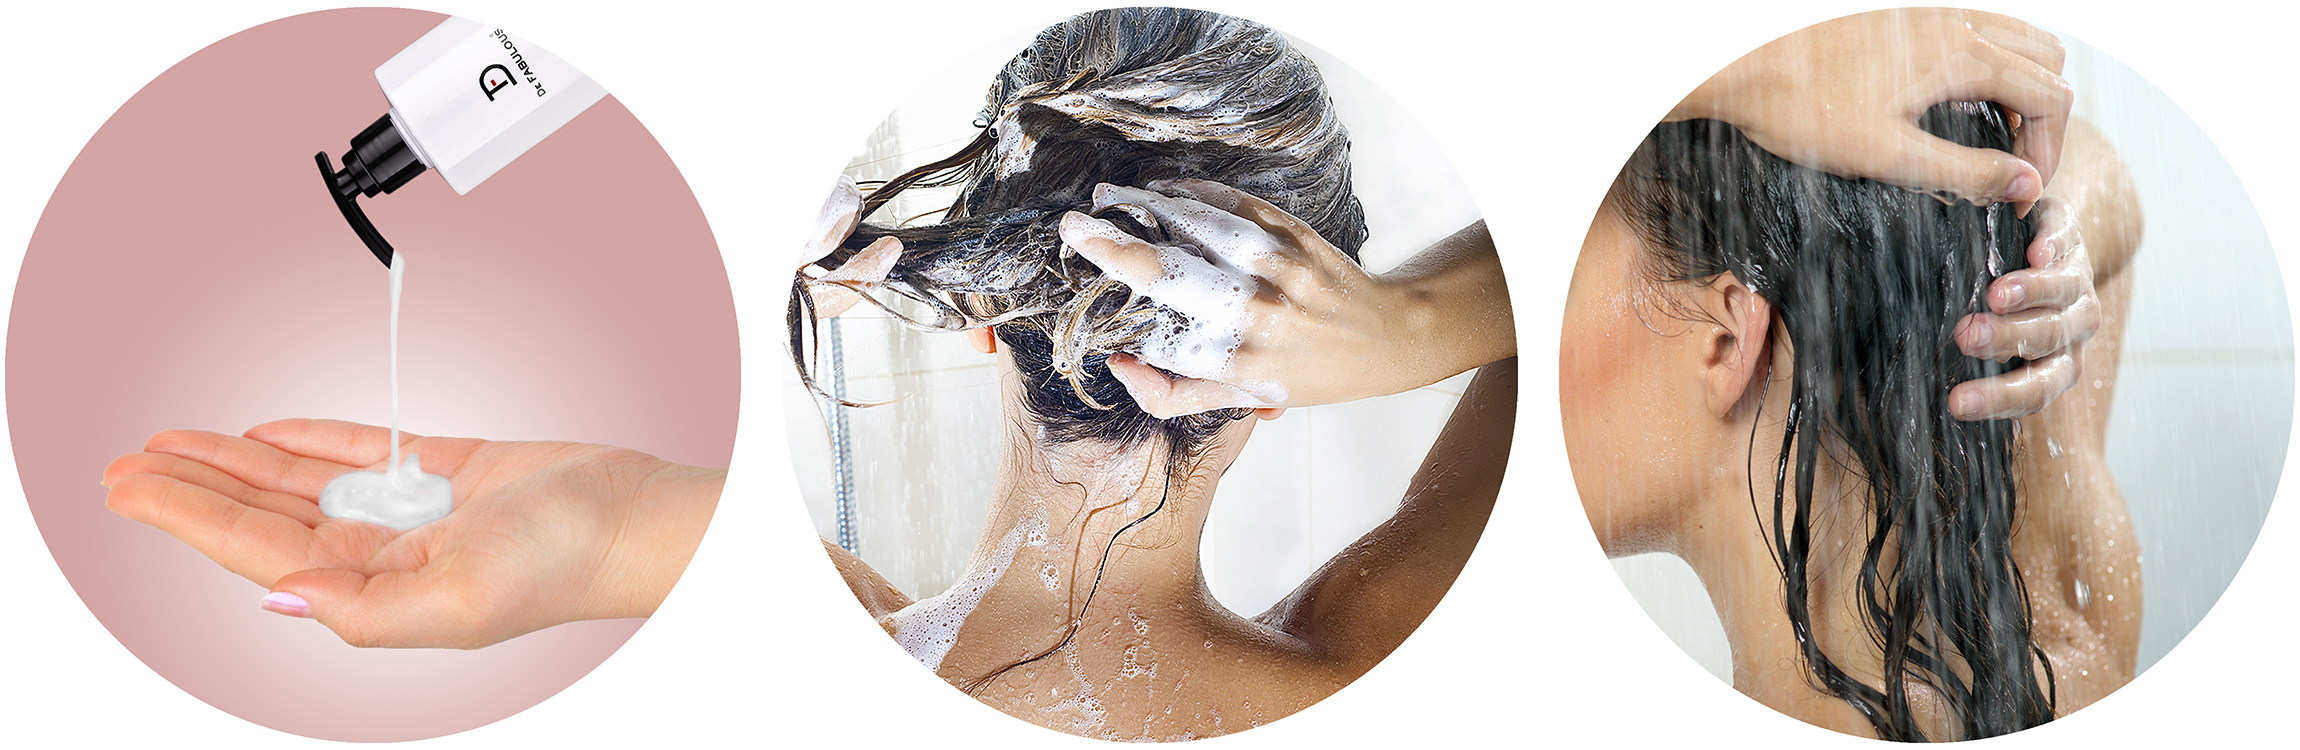 how to use get closer scalp Aid shampoo : get-closer-shampoo-steps